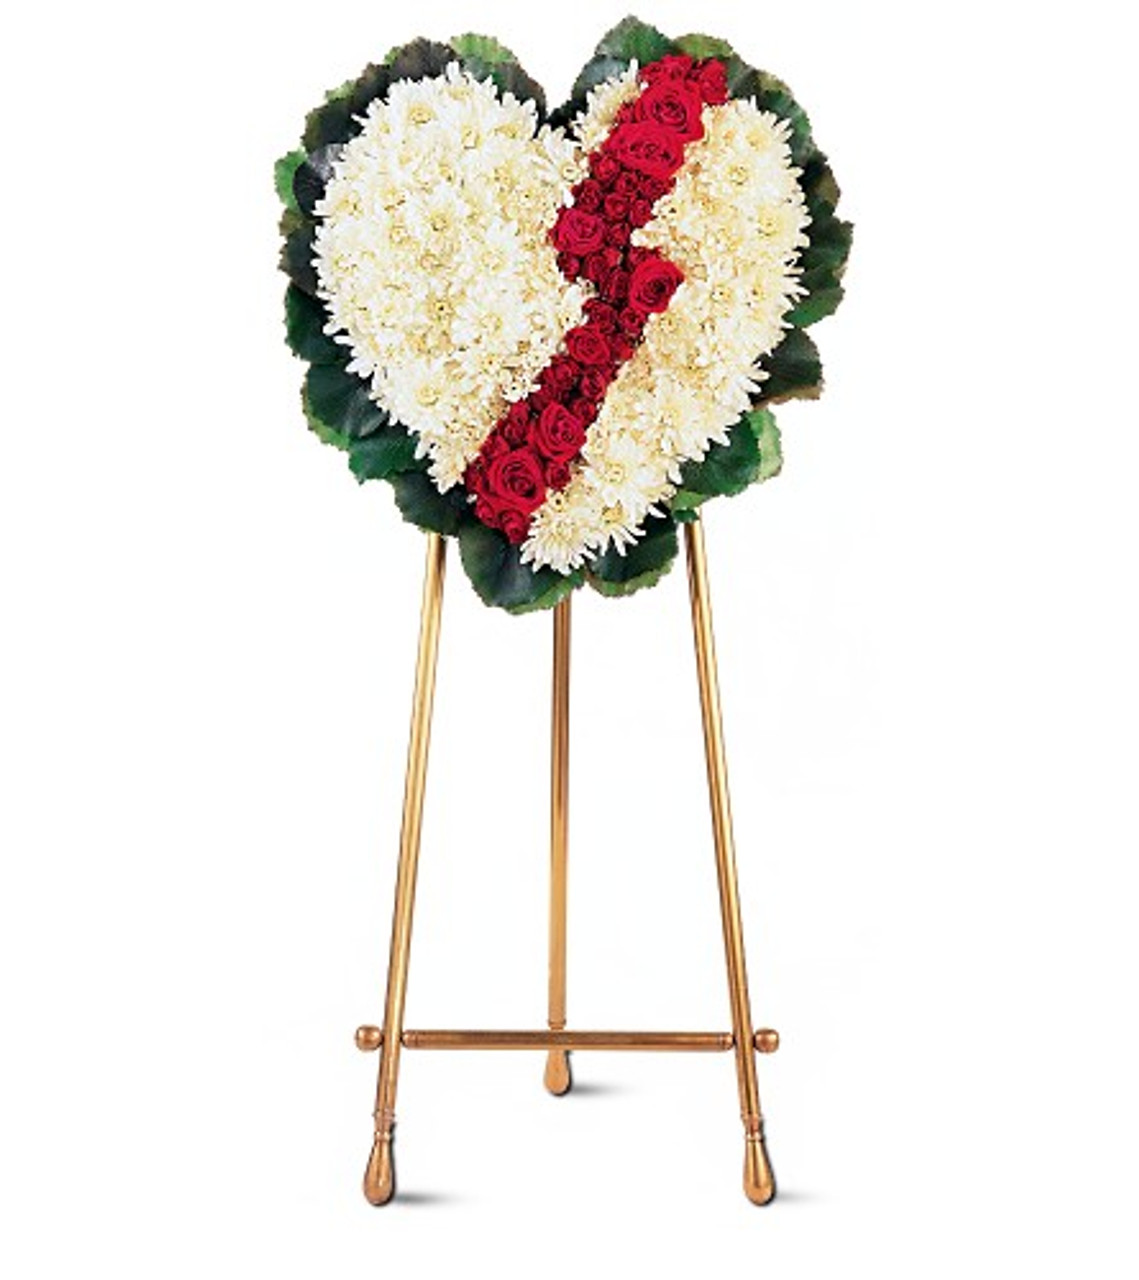 Broken Heart Funeral Tribute